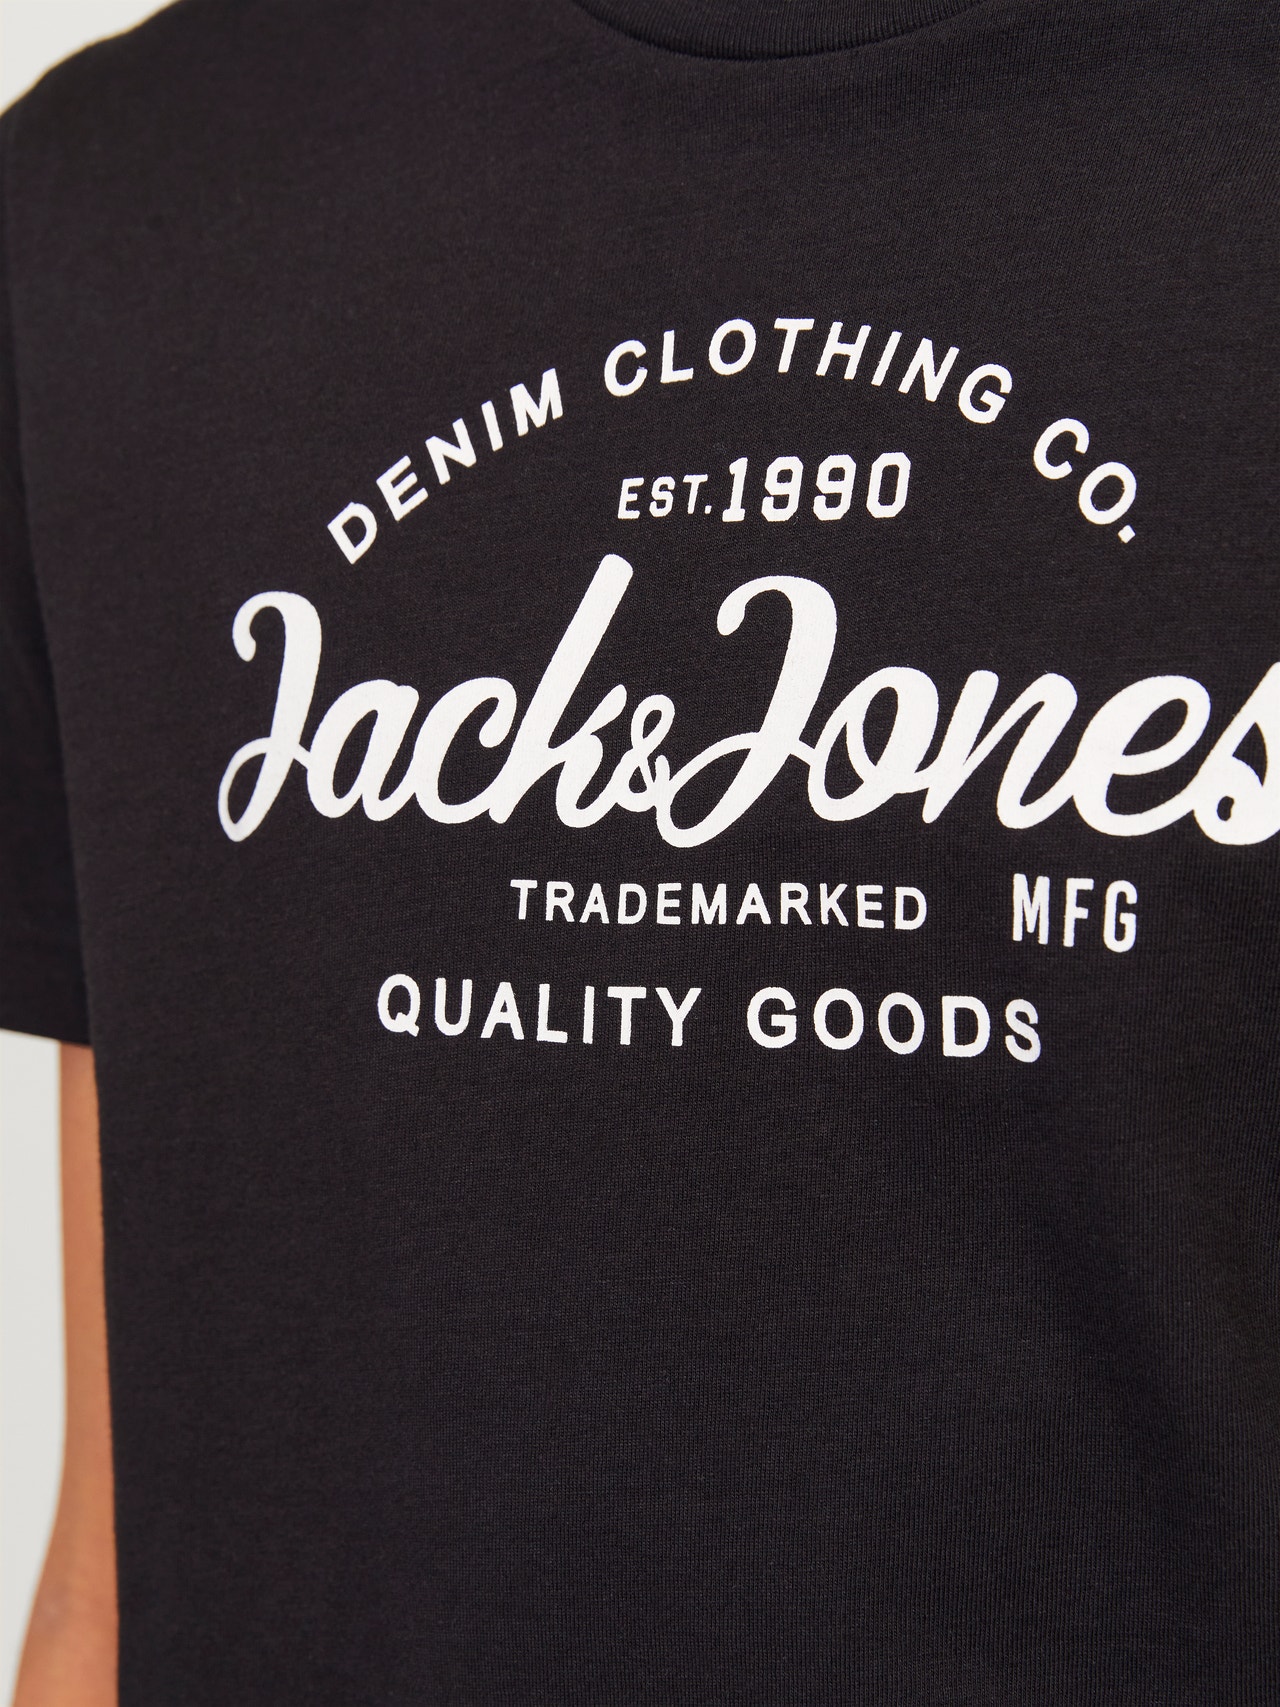 Jack & Jones Gedrukt Loungewearset Voor jongens -Black - 12255845